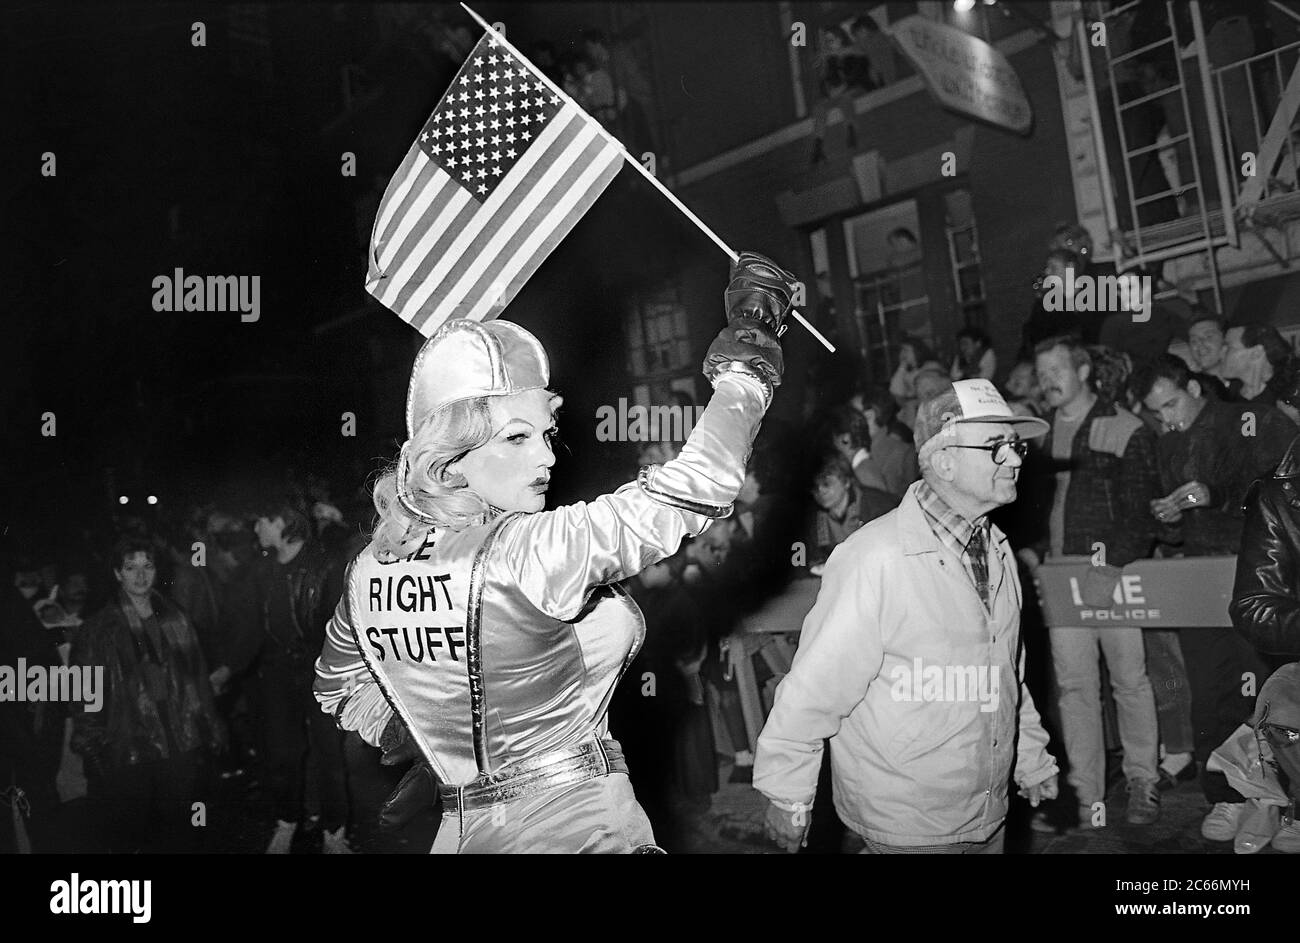 Il 'Right Stuff' al Greenwich Village Halloween Parade, New York City, USA negli anni '80 fotografato con film in bianco e nero di notte. Foto Stock